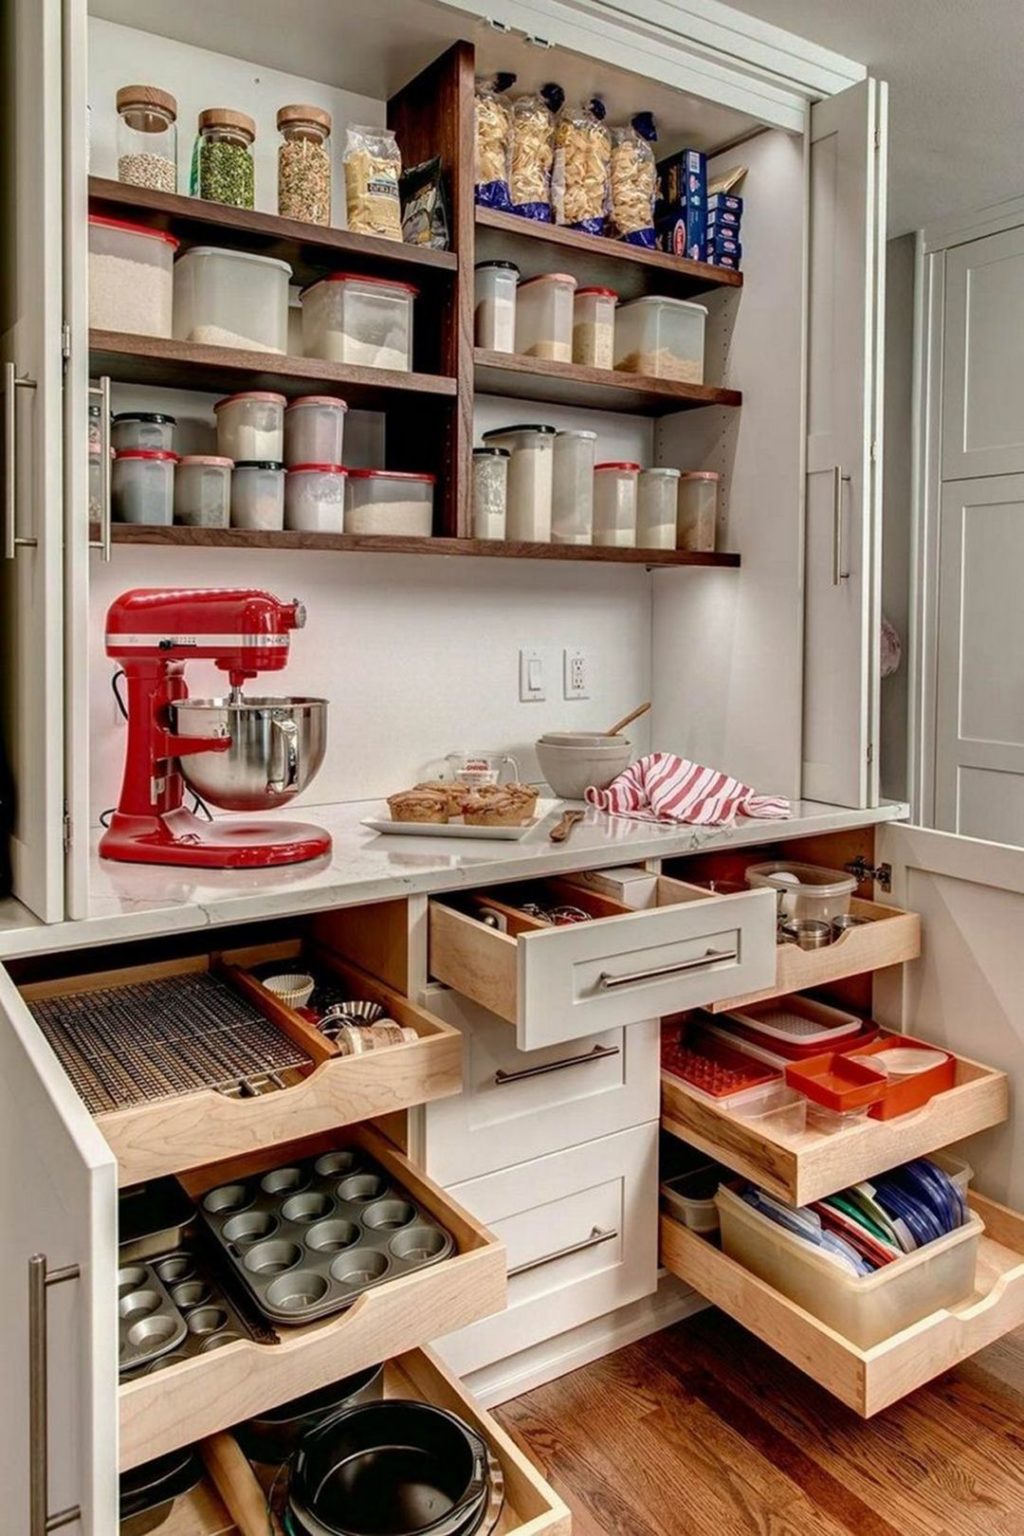 DIY Small Kitchen Storage Design